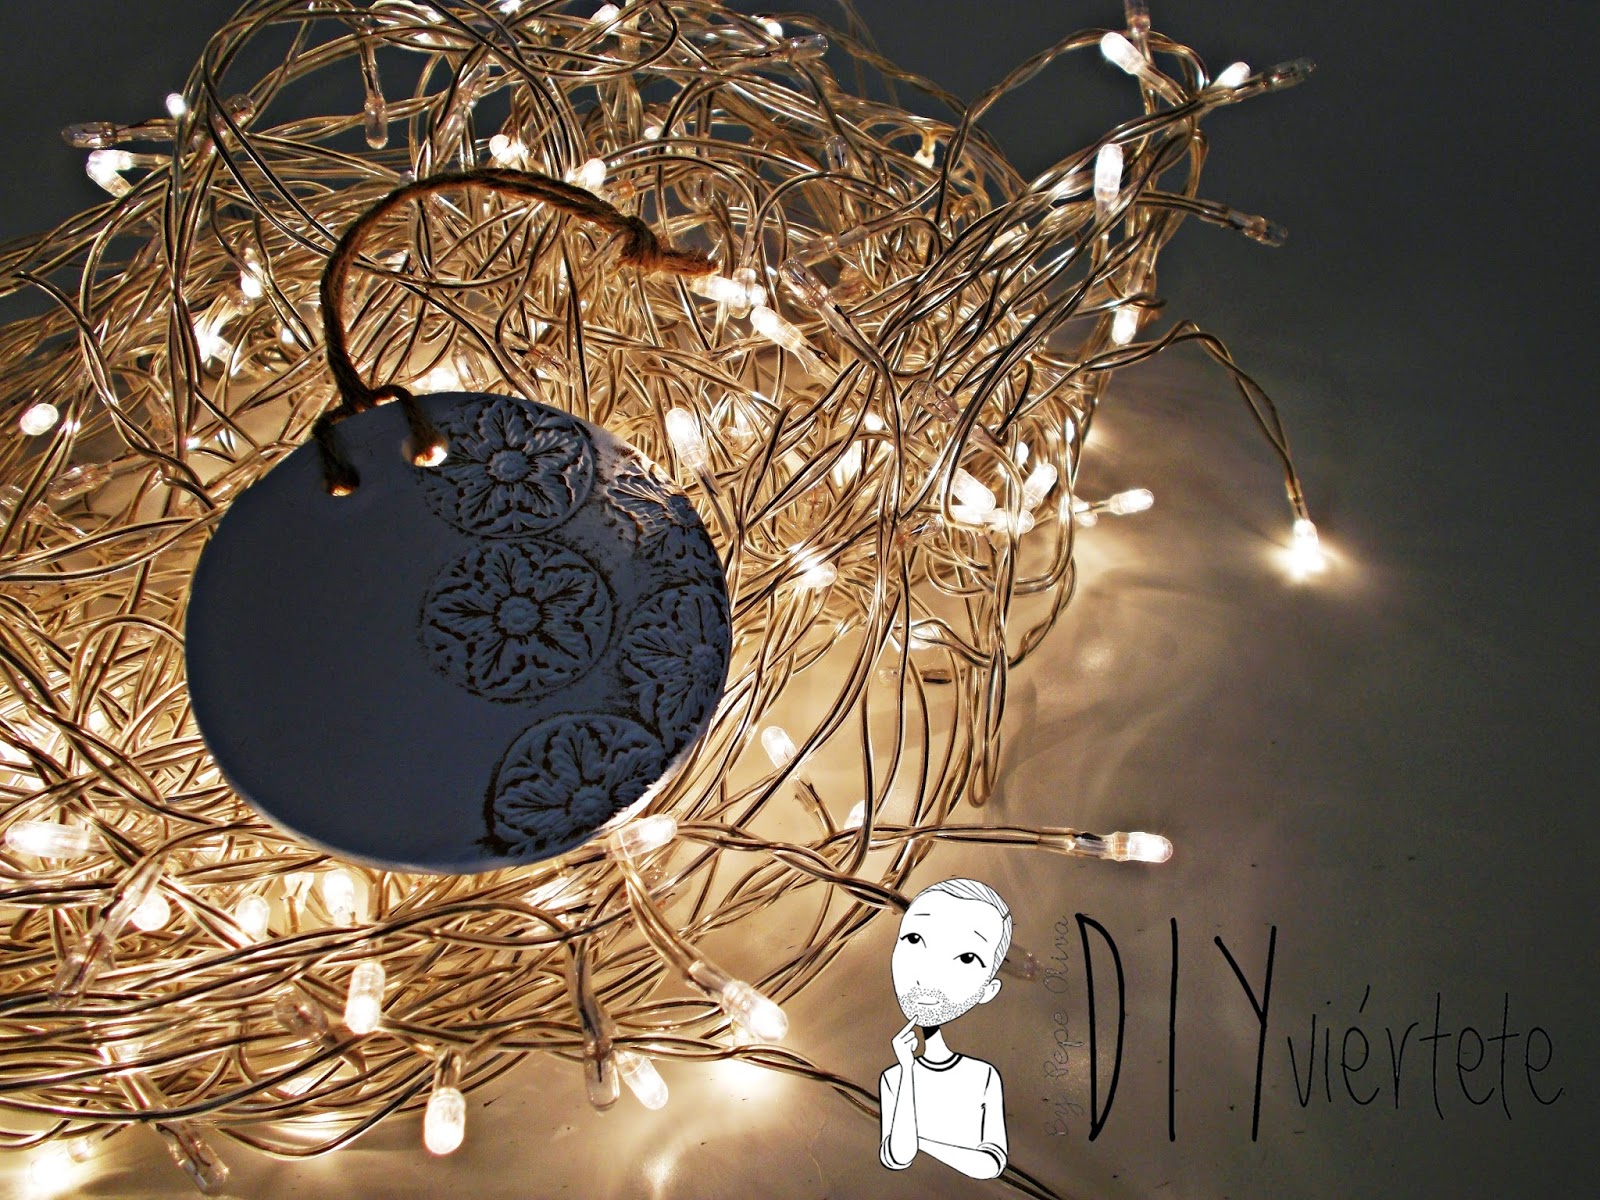 DIY-adorno navideño-ideas decoración-pasta de modelar-porcelana fria-fimo-arcilla polimérica-encaje-dorado-Navidad (2)